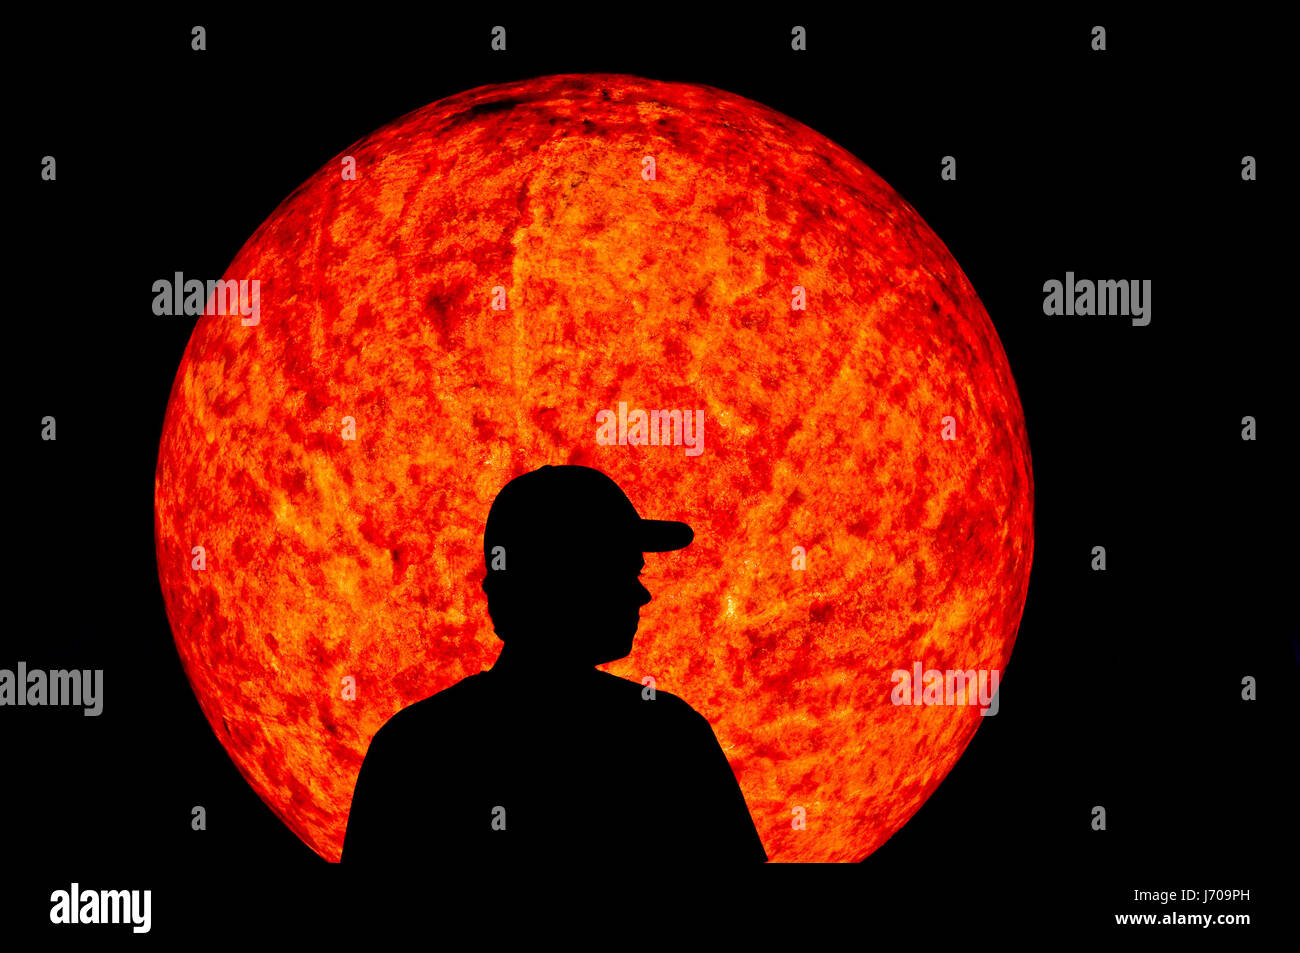 weltraum sonne silhouette gegenlicht sterne weltall sonnensystem planeten Stock Photo